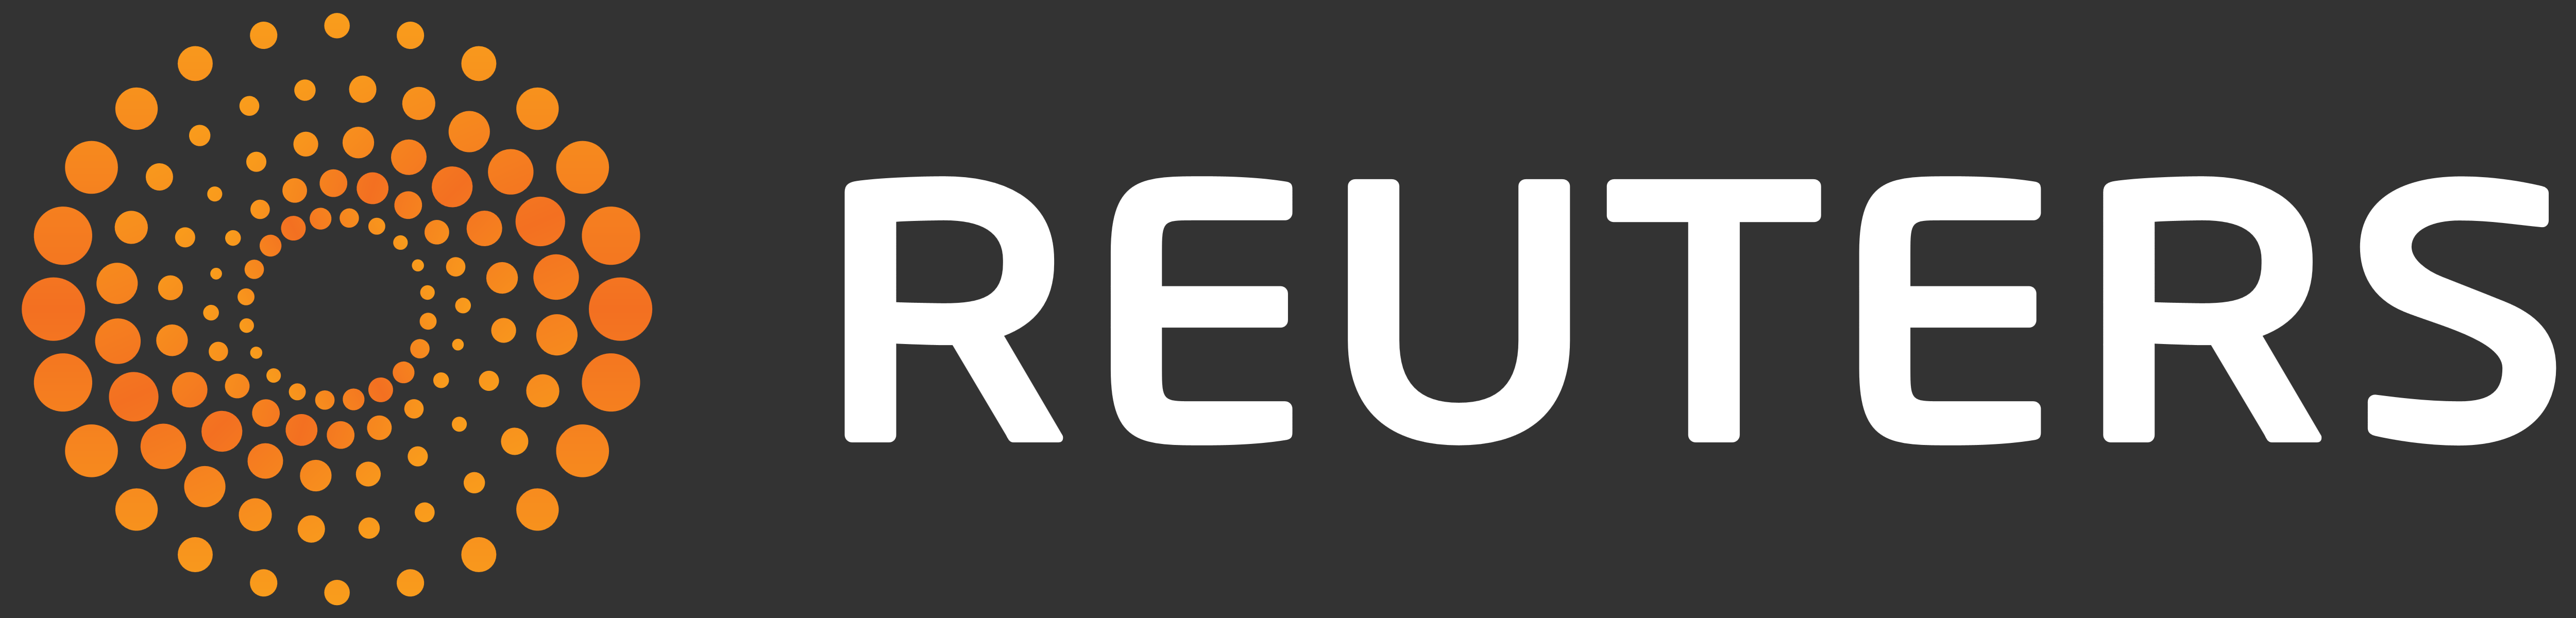 Image result for reuters logo